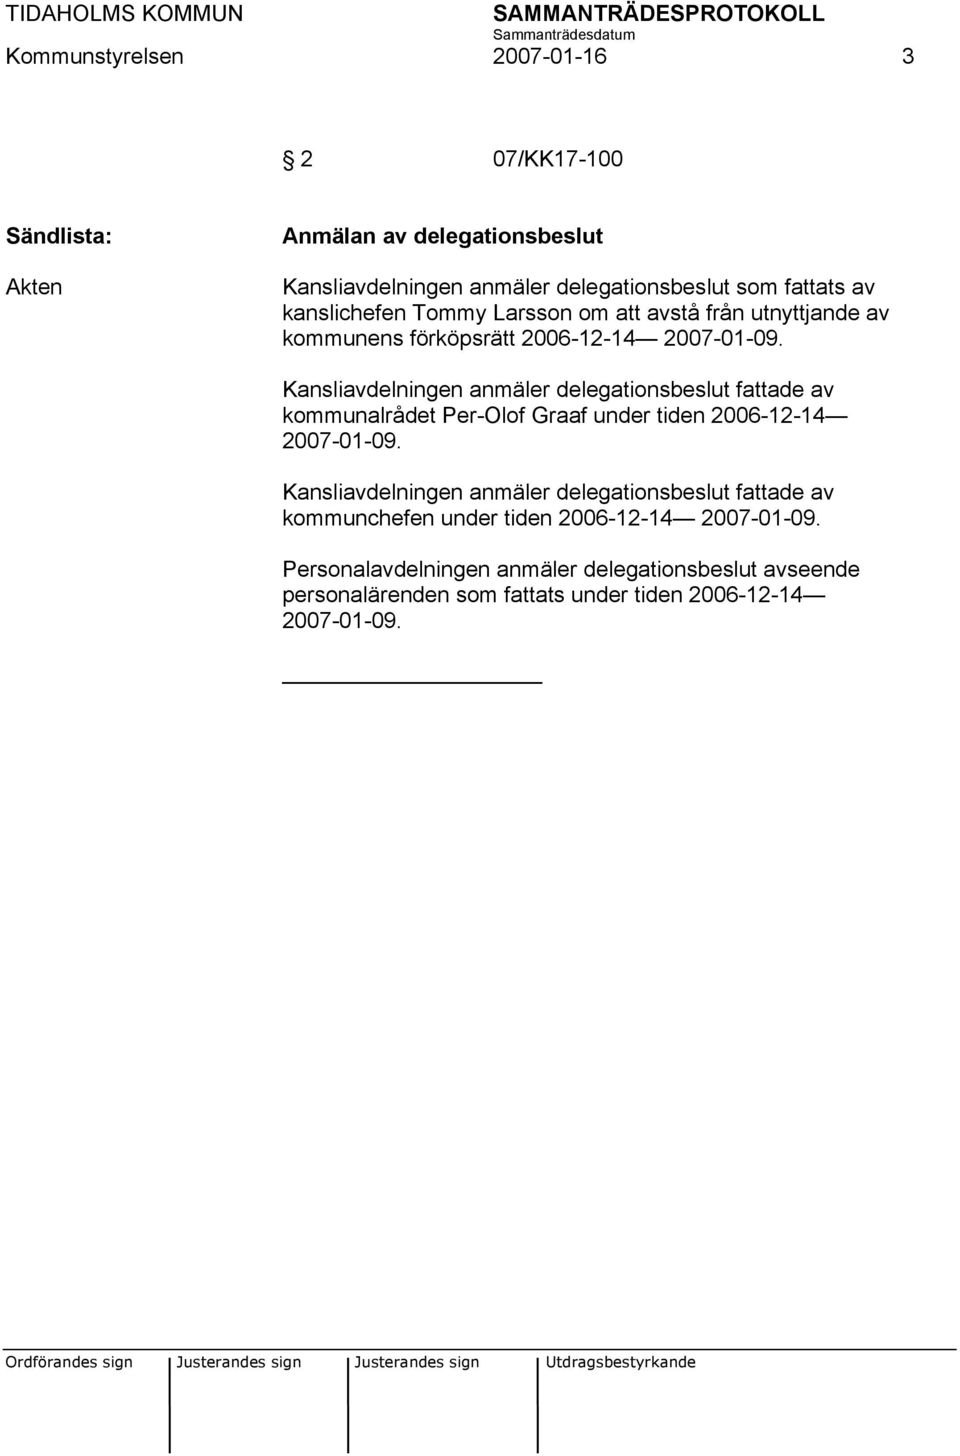 Kansliavdelningen anmäler delegationsbeslut fattade av kommunalrådet Per-Olof Graaf under tiden 2006-12-14 2007-01-09.